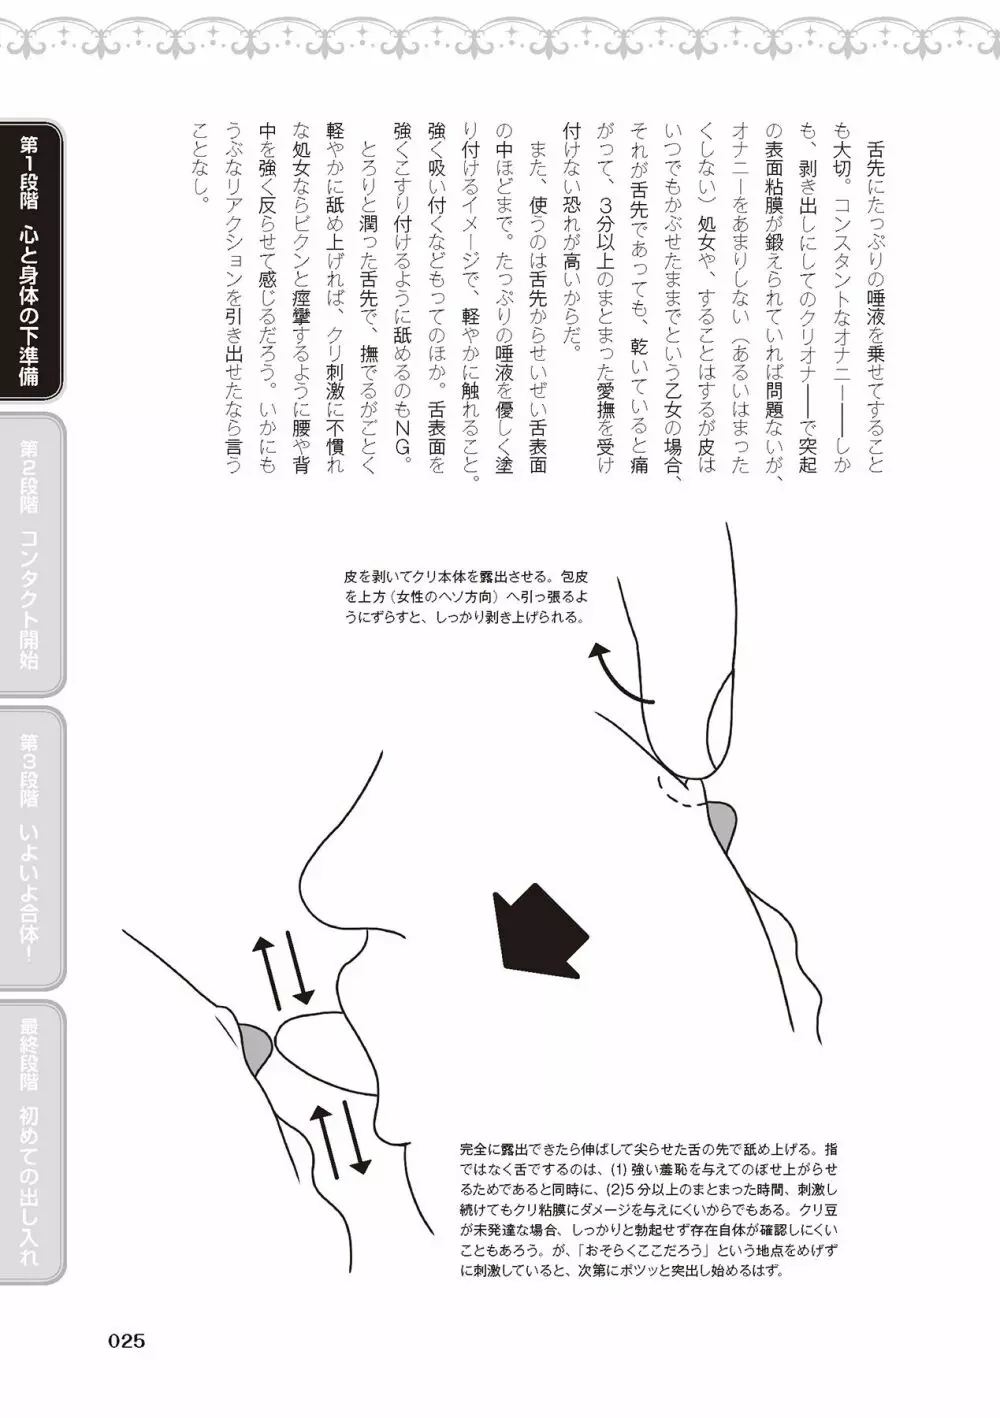 処女喪失・ロストヴァージンSEX完全マニュアル イラスト版……初エッチ 27ページ